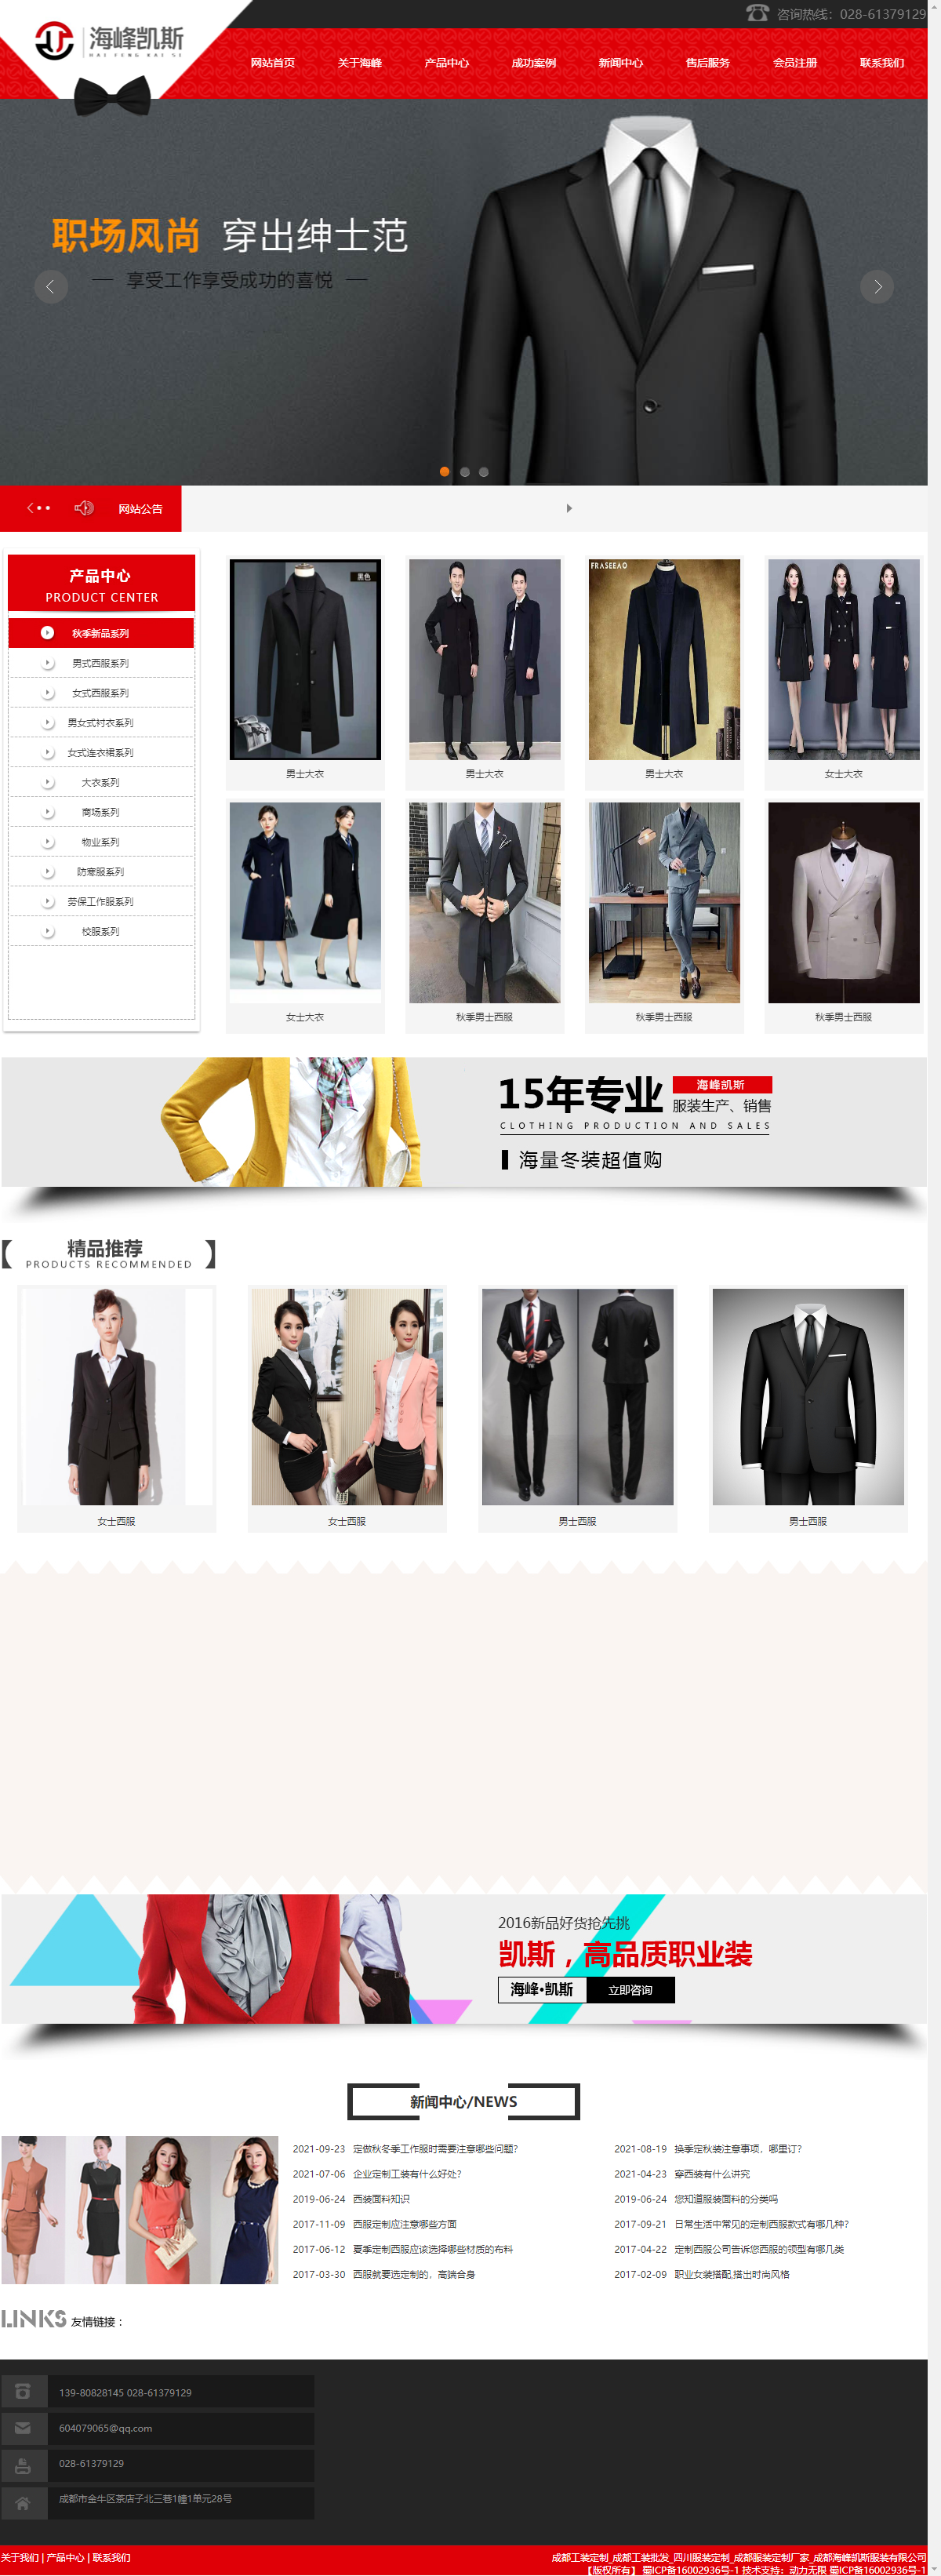 成都海峰凯斯服装有限公司网站案例